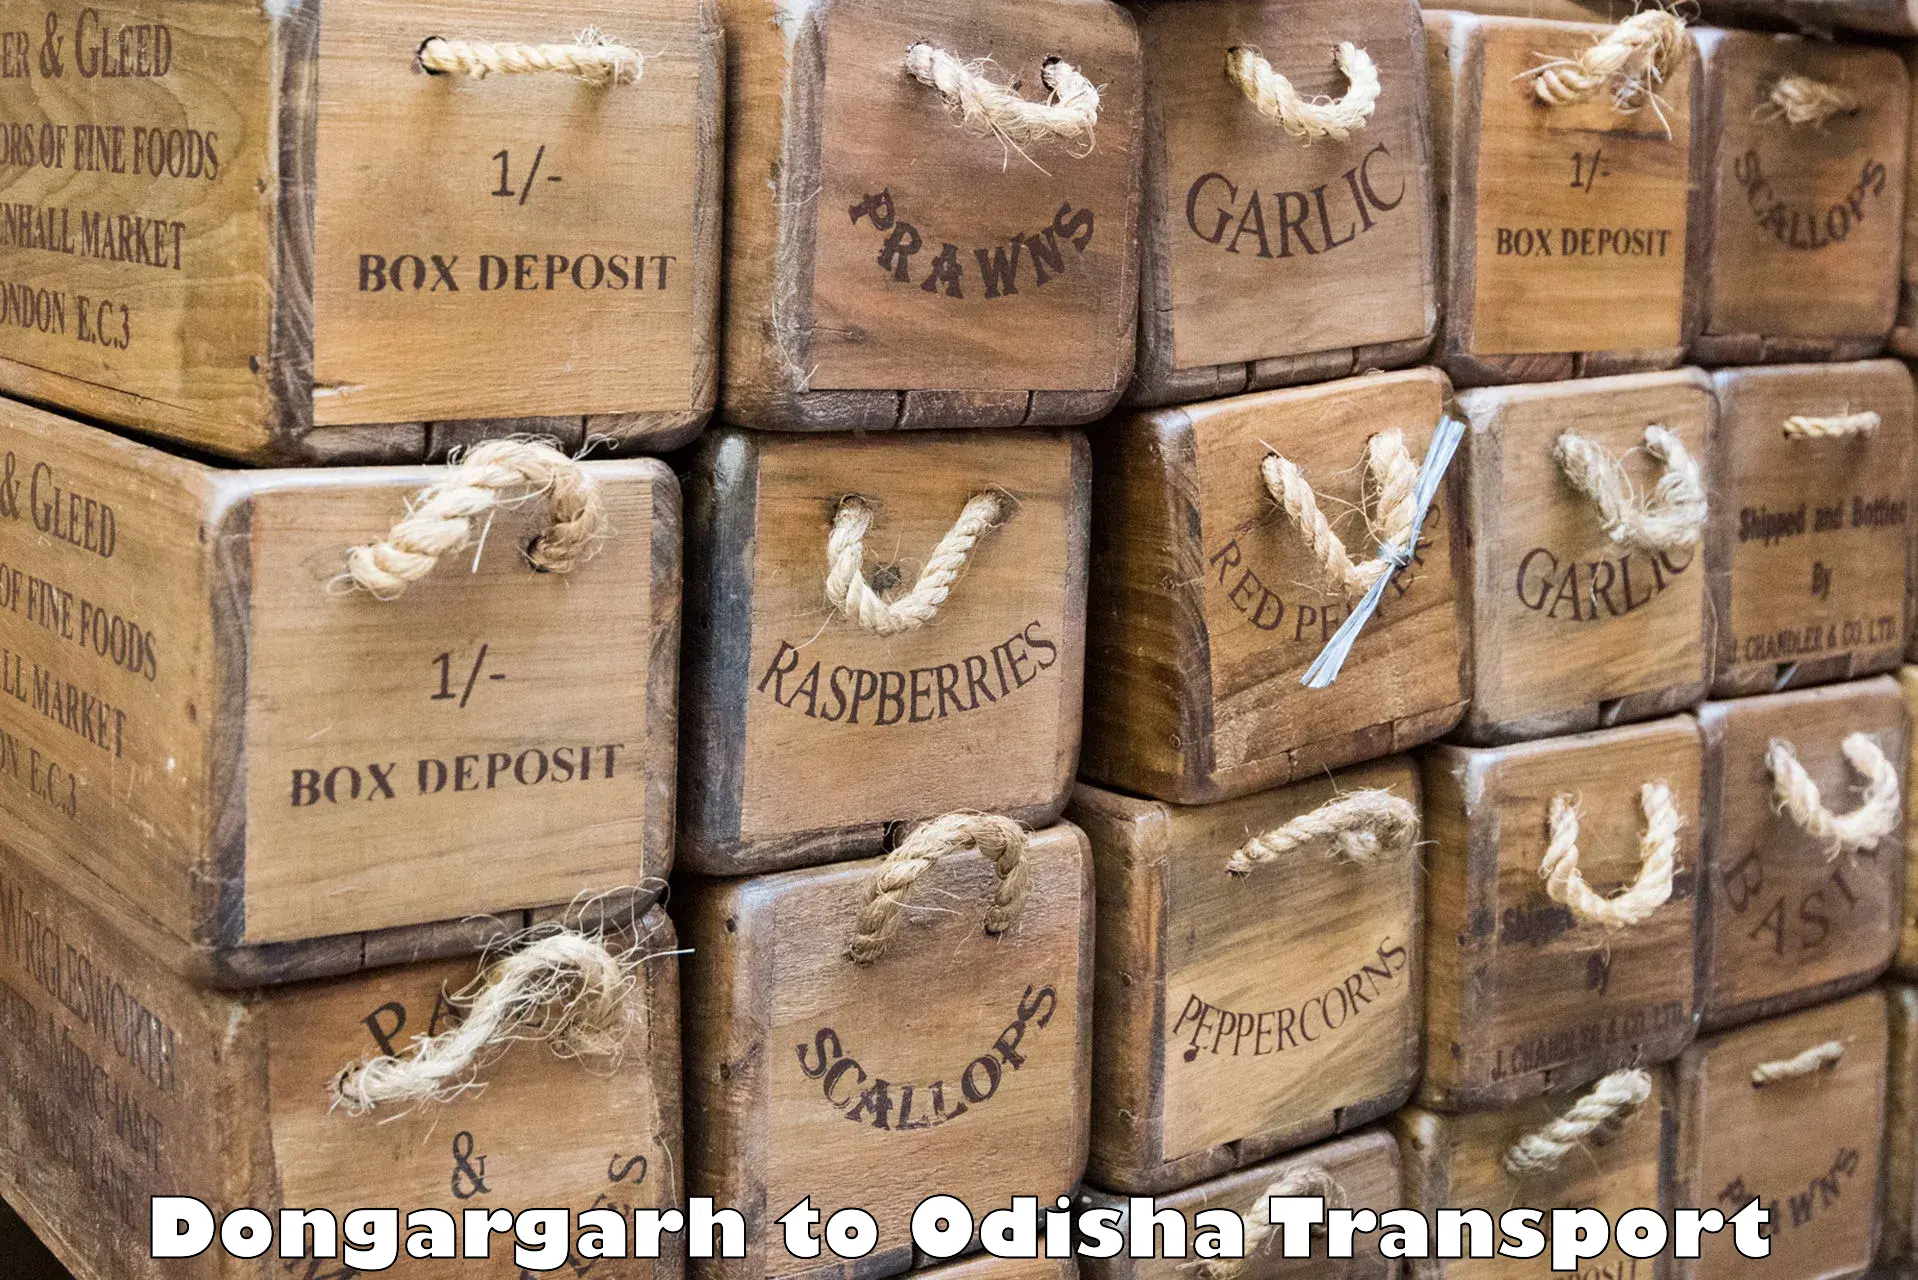 Luggage transport services Dongargarh to Bhubaneswar